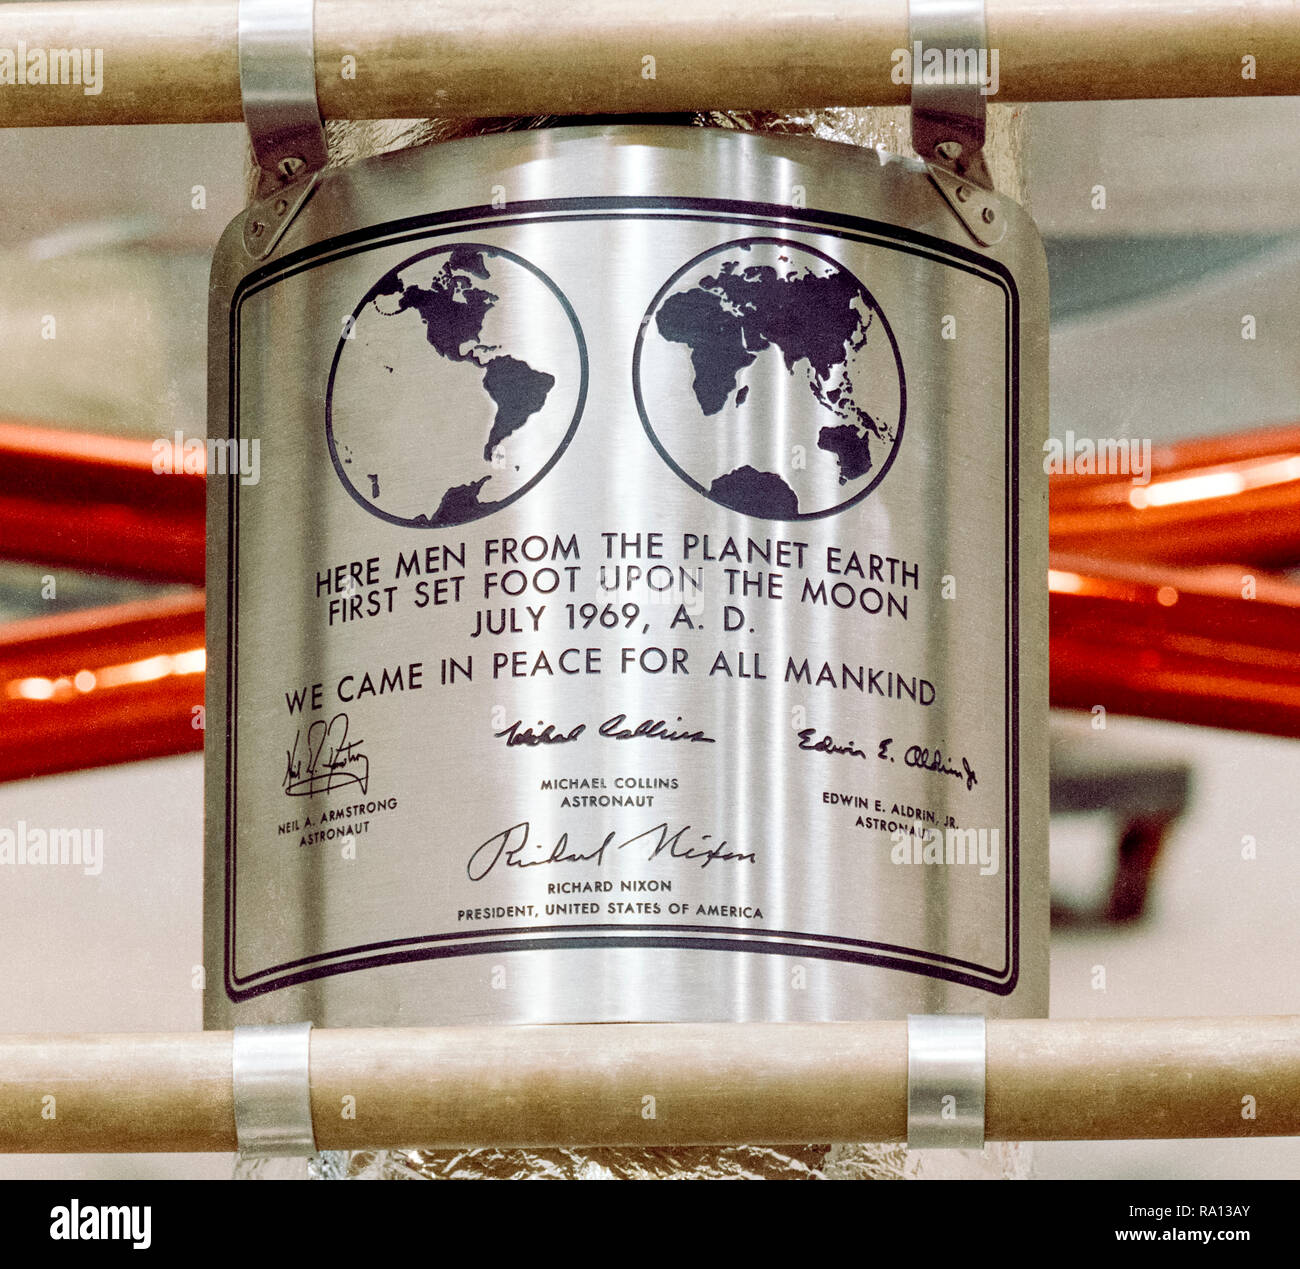 Apollo 11 Edelstahl Plakette im Apollo Lunar Module angeschlossen, die auf dem Mond gelandet. Von Jack Kinzler konzipiert, NASA der Text lautet: "Hier Menschen vom Planeten Erde Erste setzen Sie einen Fuß auf den Mond, Juli, 1969, AD. Wir kamen in Frieden für die ganze Menschheit" durch den eingravierten Unterschriften der trägt die Unterschriften von Neil Armstrong, Michael Collins, Buzz Aldrin und Präsident Richard Nixon. Die Plaketten aller erfolgreichen Missionen, landete auf dem Mond. Stockfoto